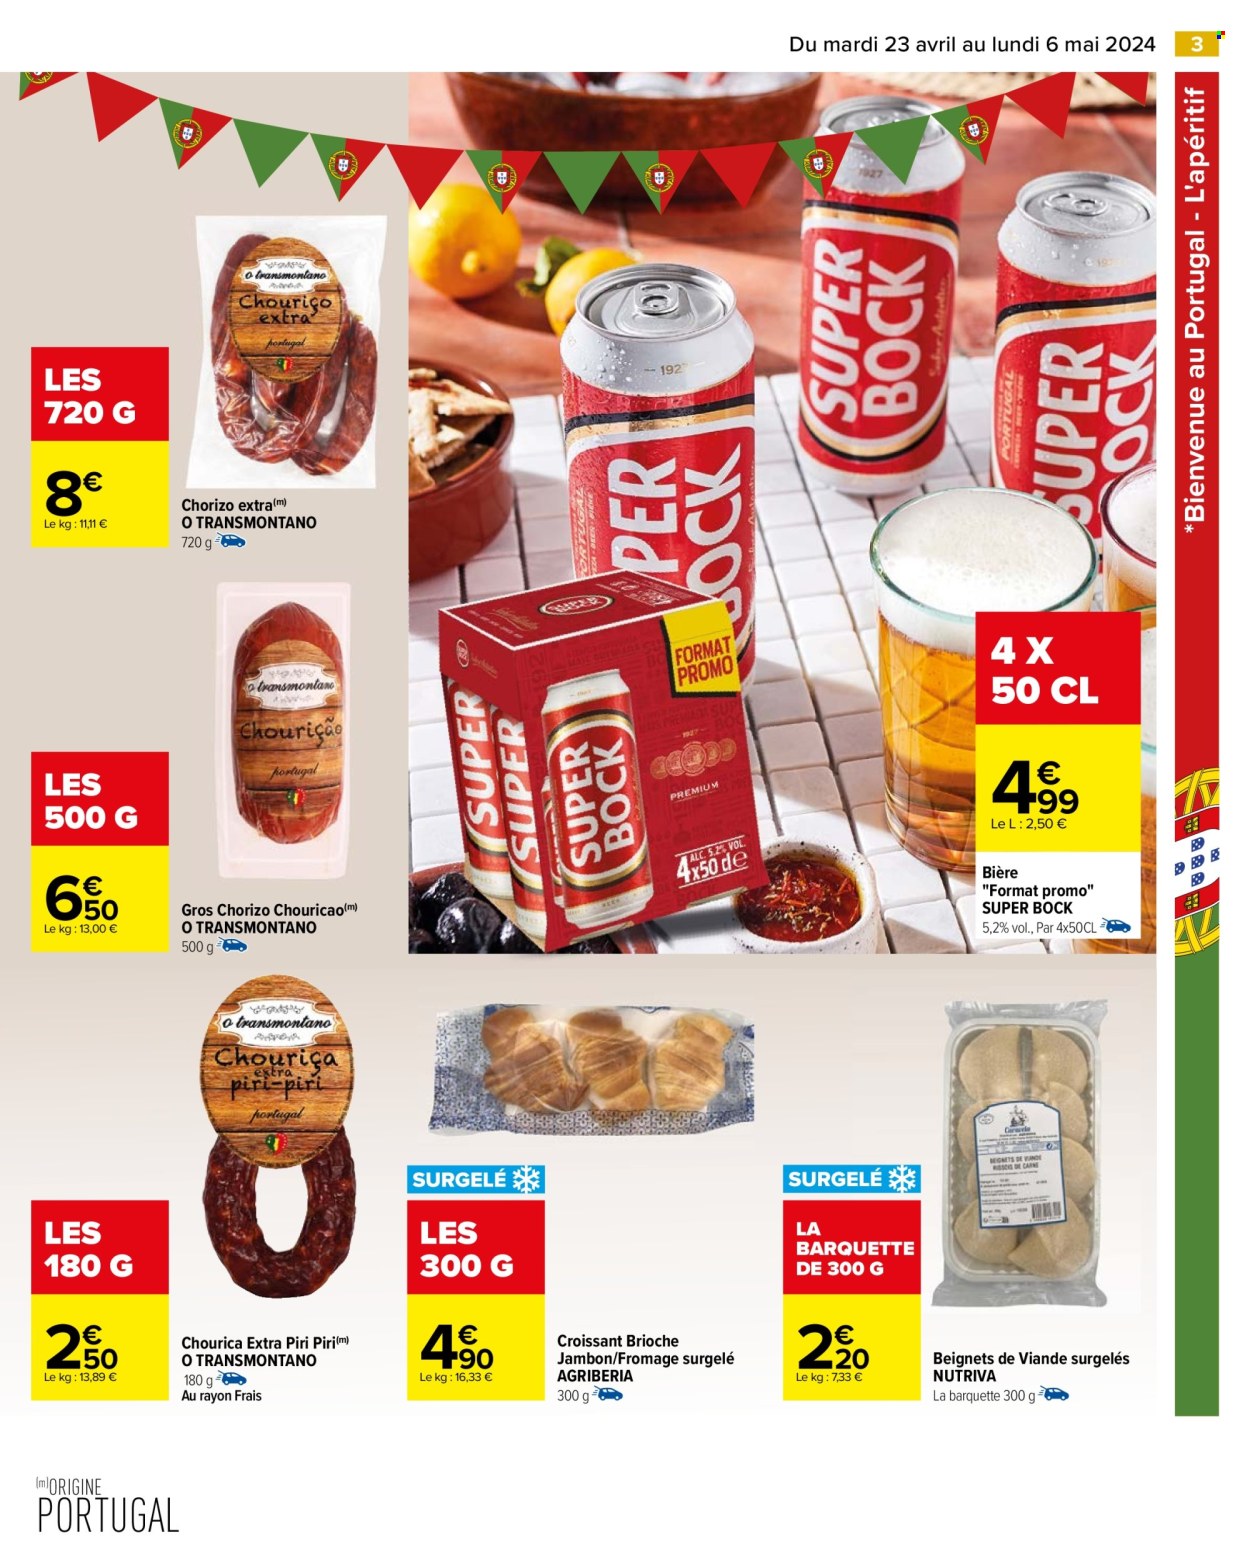 Catalogue Carrefour Hypermarchés - 23.04.2024 - 06.05.2024. 